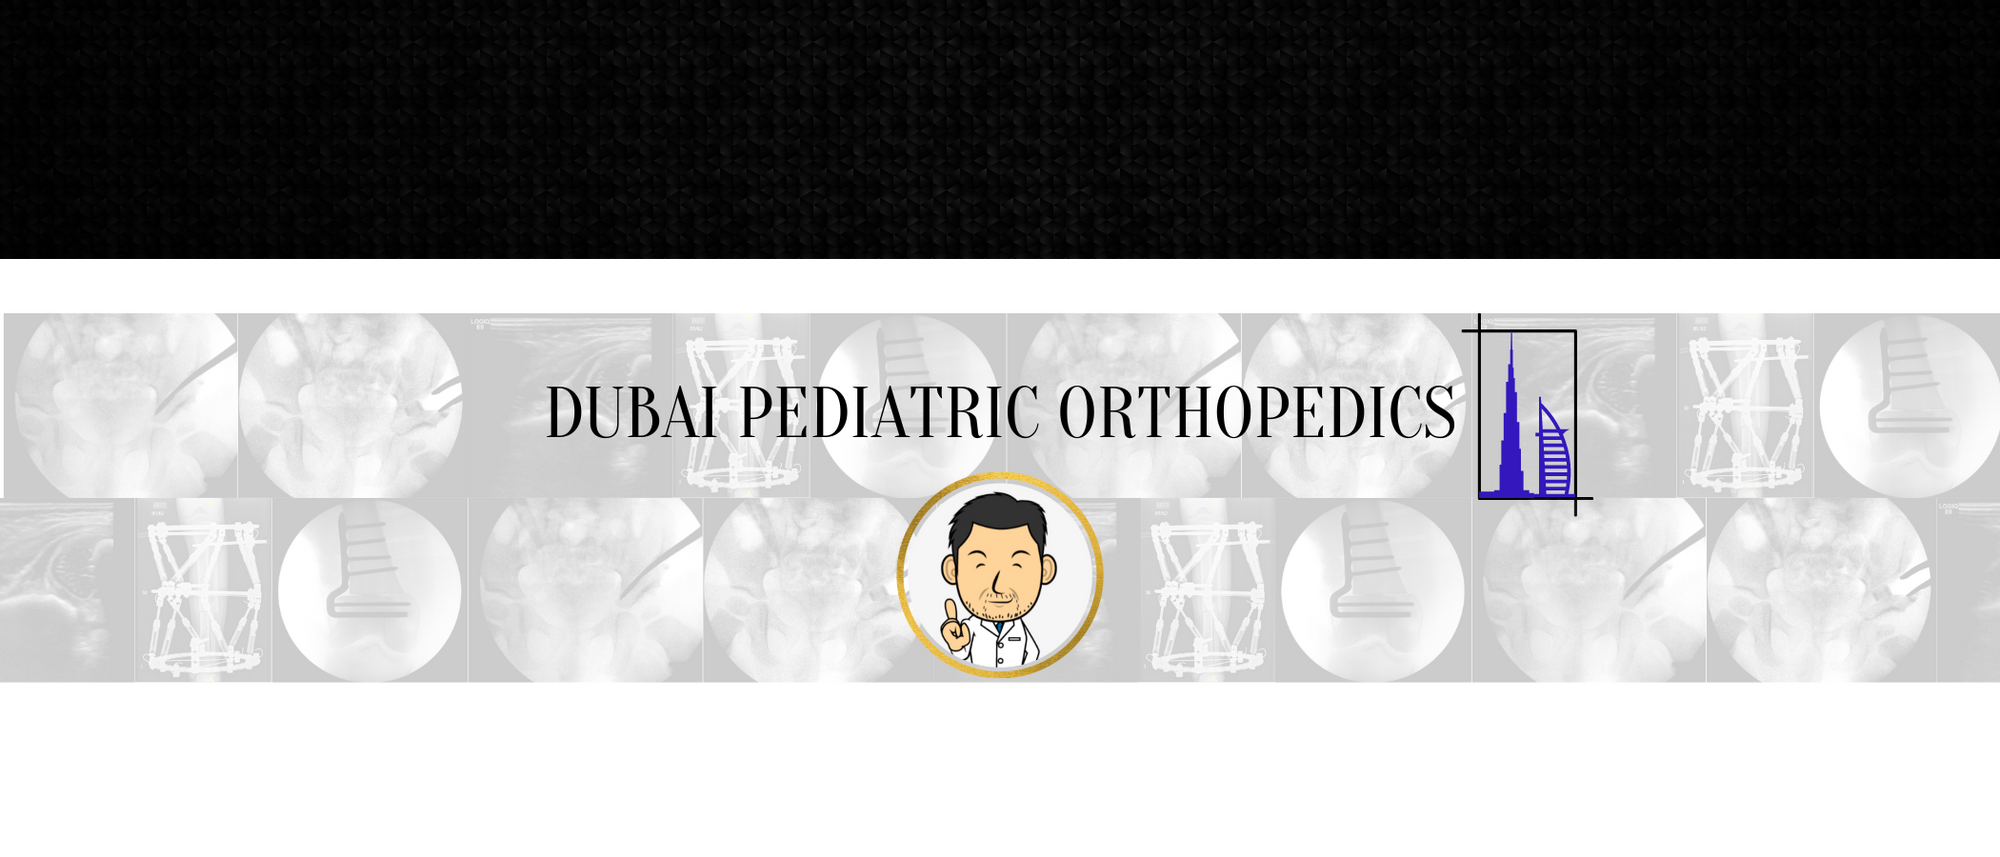 Dubai Pediatric Orthopedics